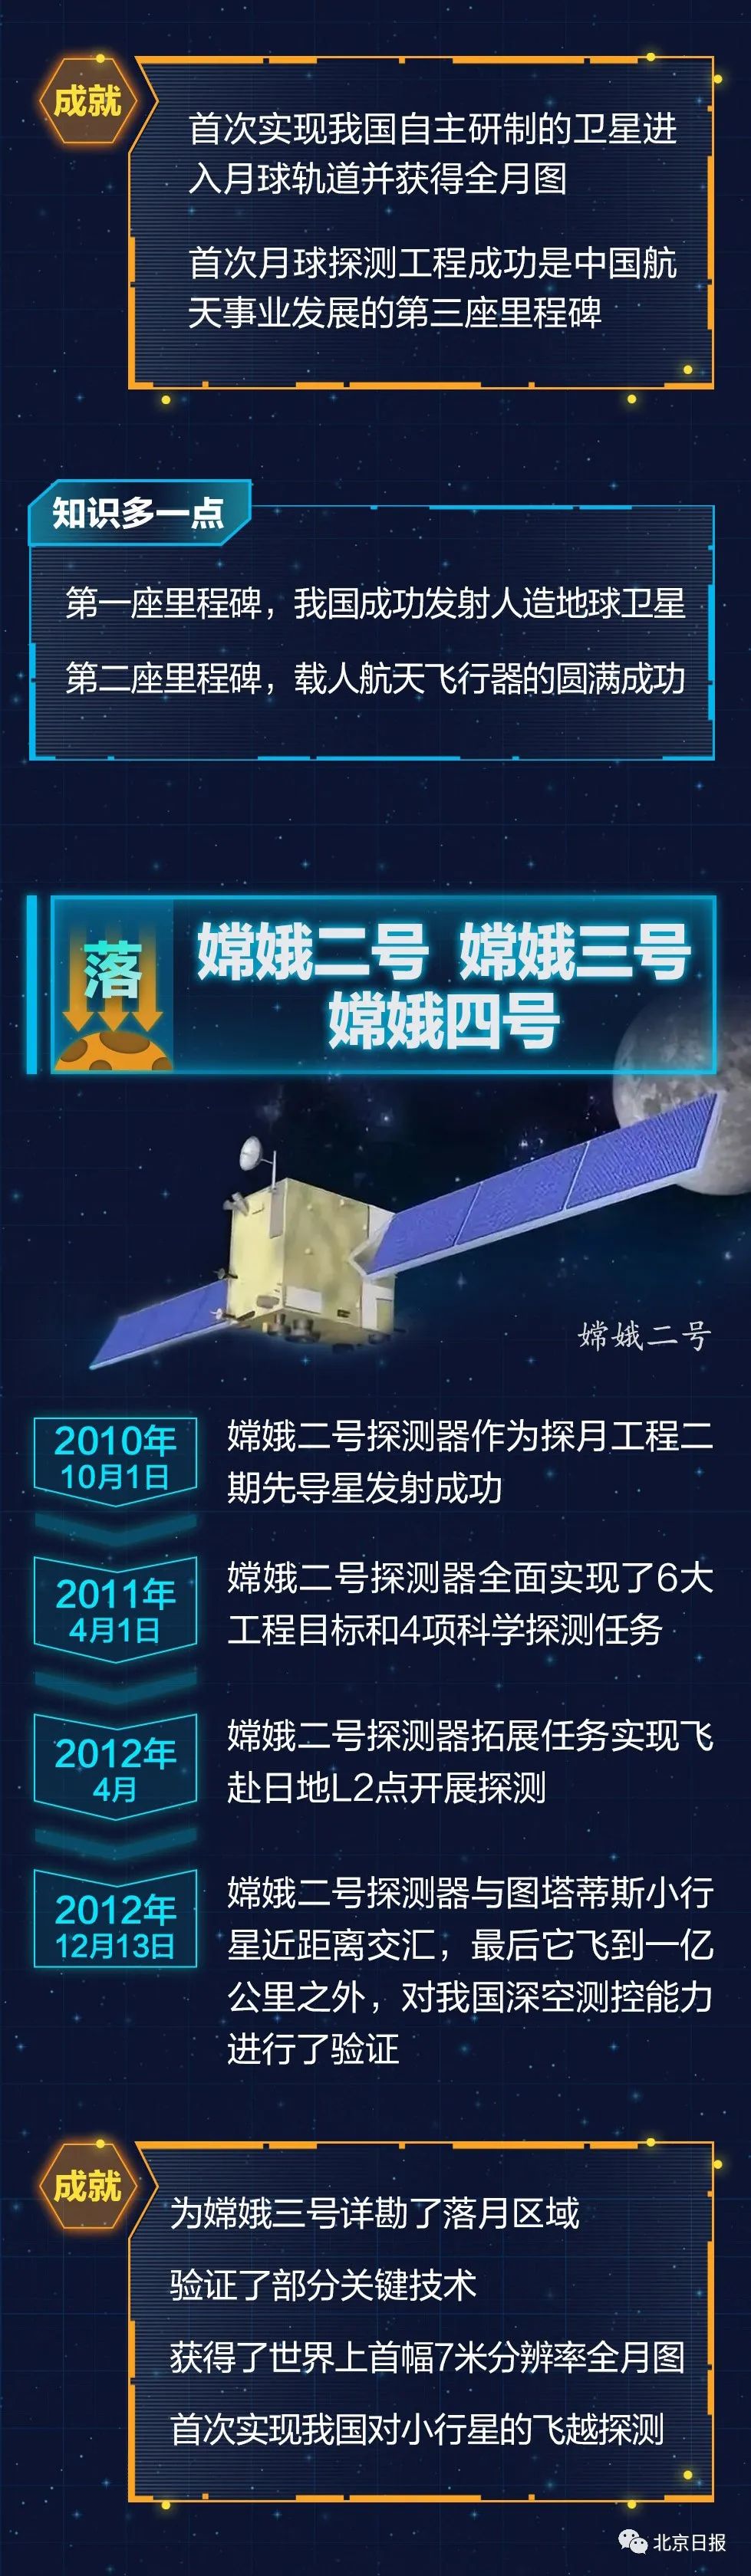 中国航天科技集团 还发布了一个形象的小剧场 真人模拟嫦娥五号发 